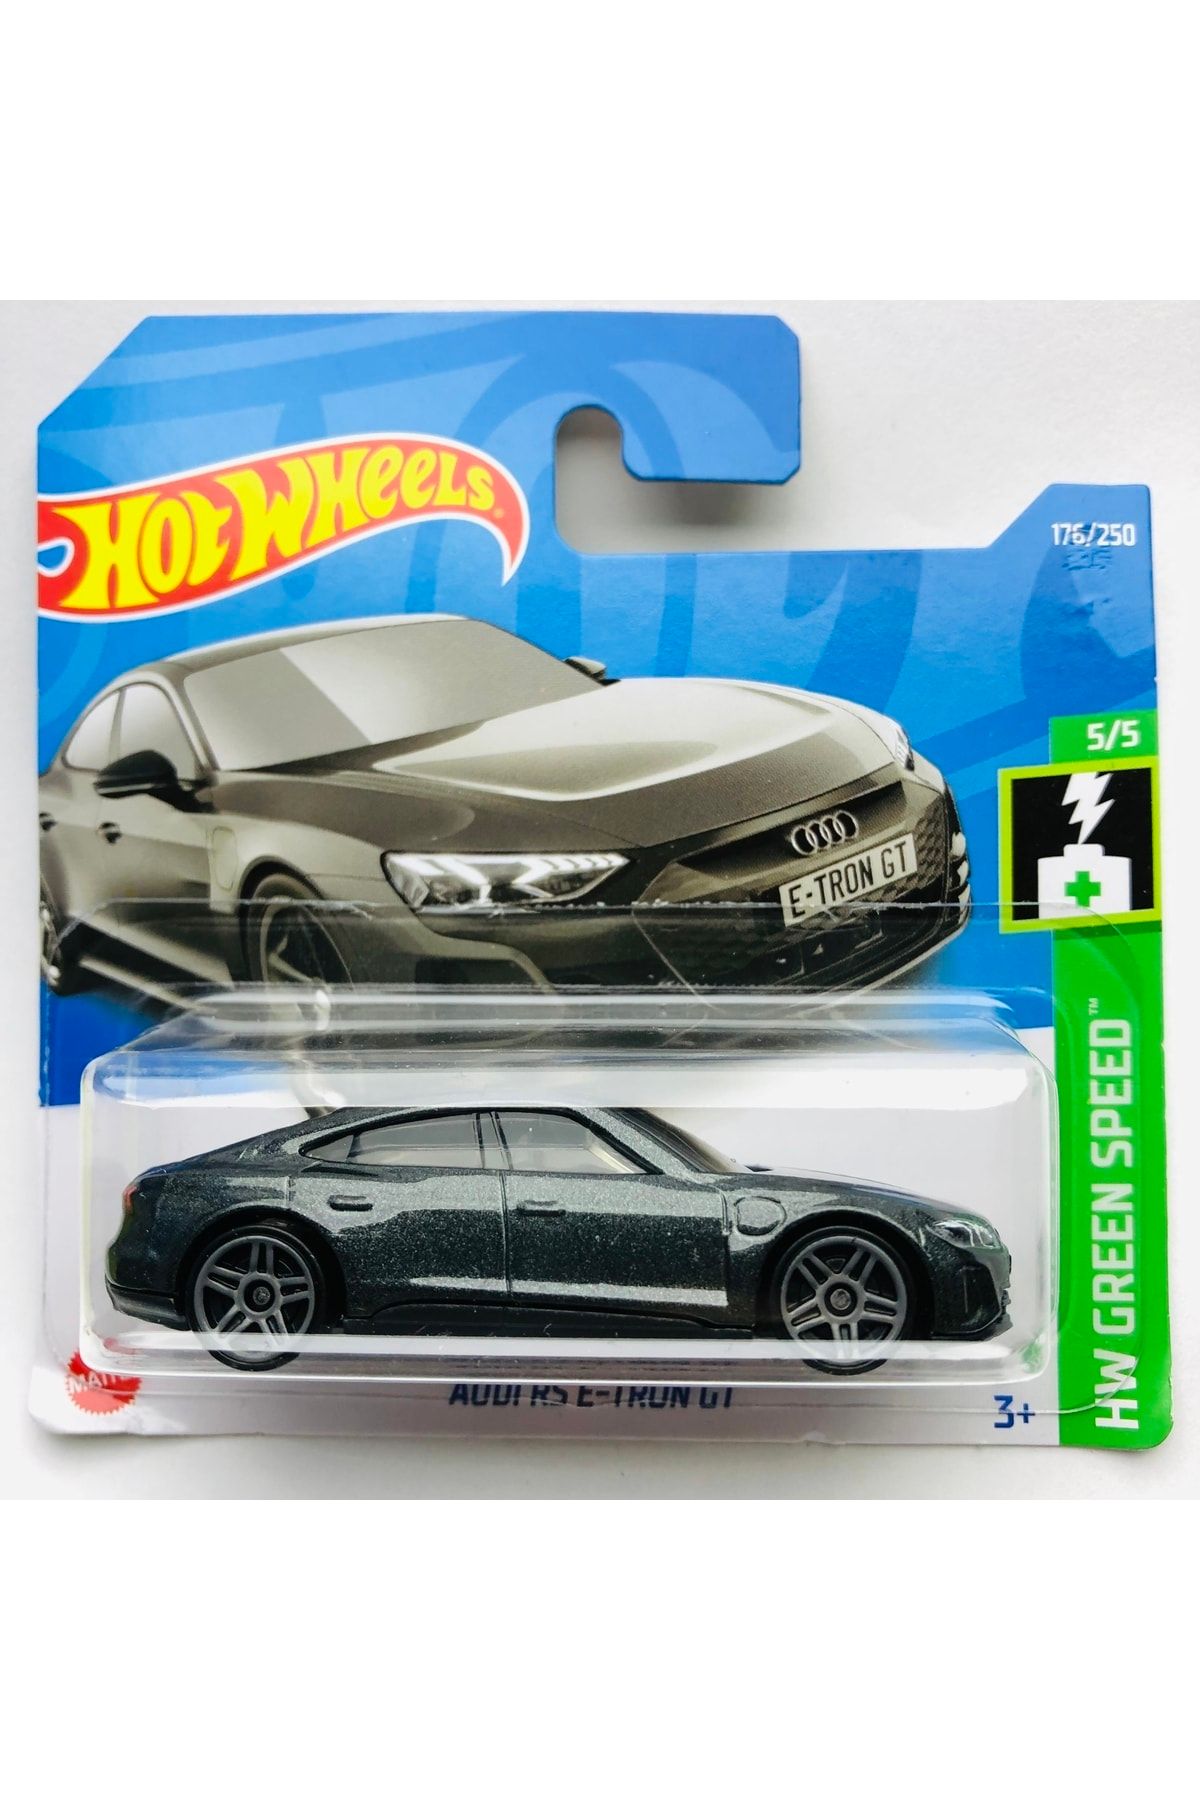 HOT WHEELS 2022 New / Yeni Audi Rs E-tron Gt Grey 1:64 Ölçek Hotwheels Marka 5/5